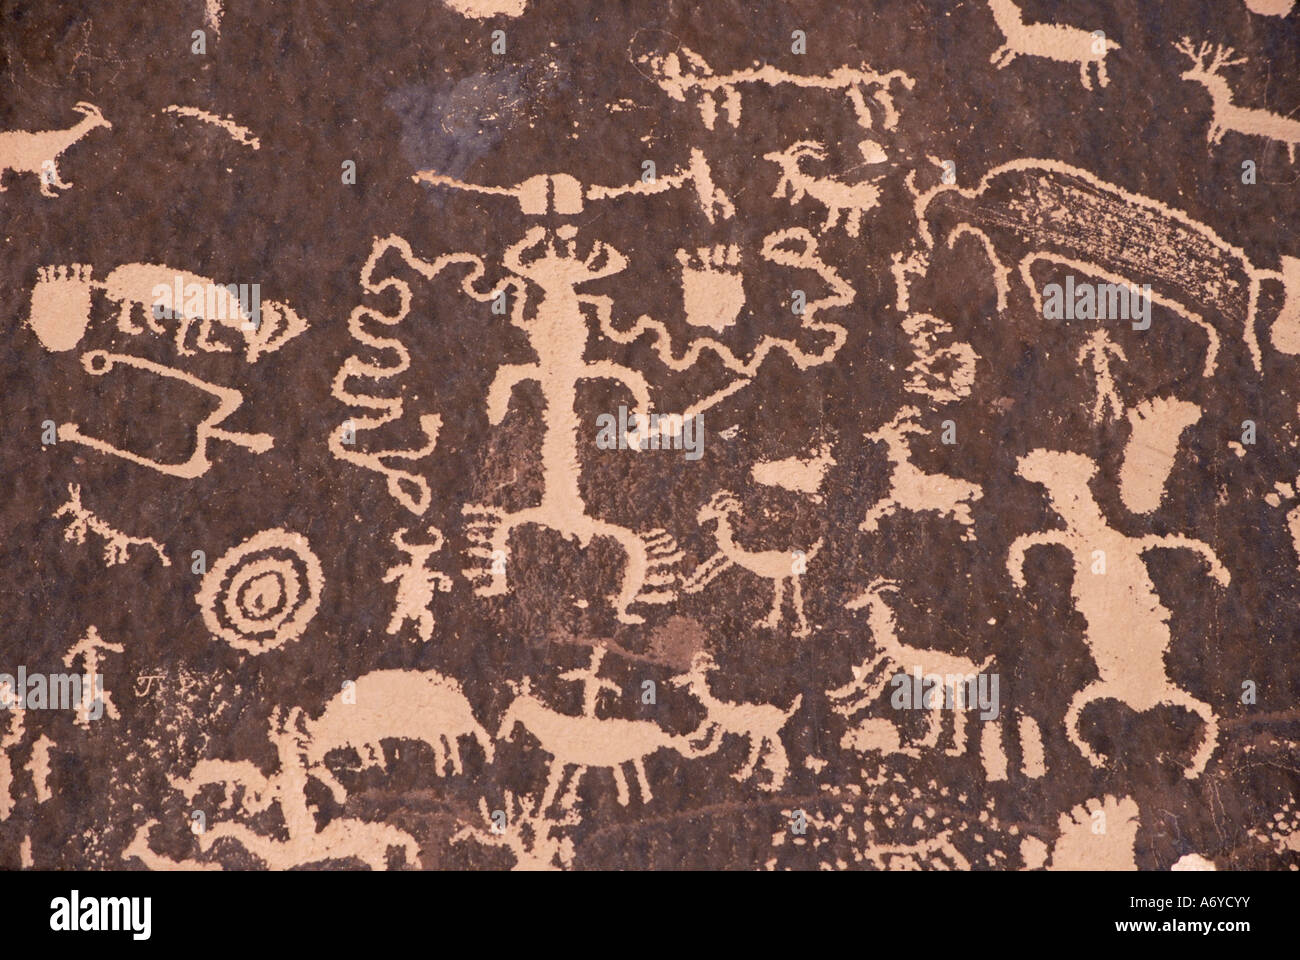 Indianische Felszeichnungen auf rote Standstone durch Kratzen entfernt dunkle Wüstenlack von Eisenoxiden Zeitung Felsen Canyonlands U gezeichnet Stockfoto